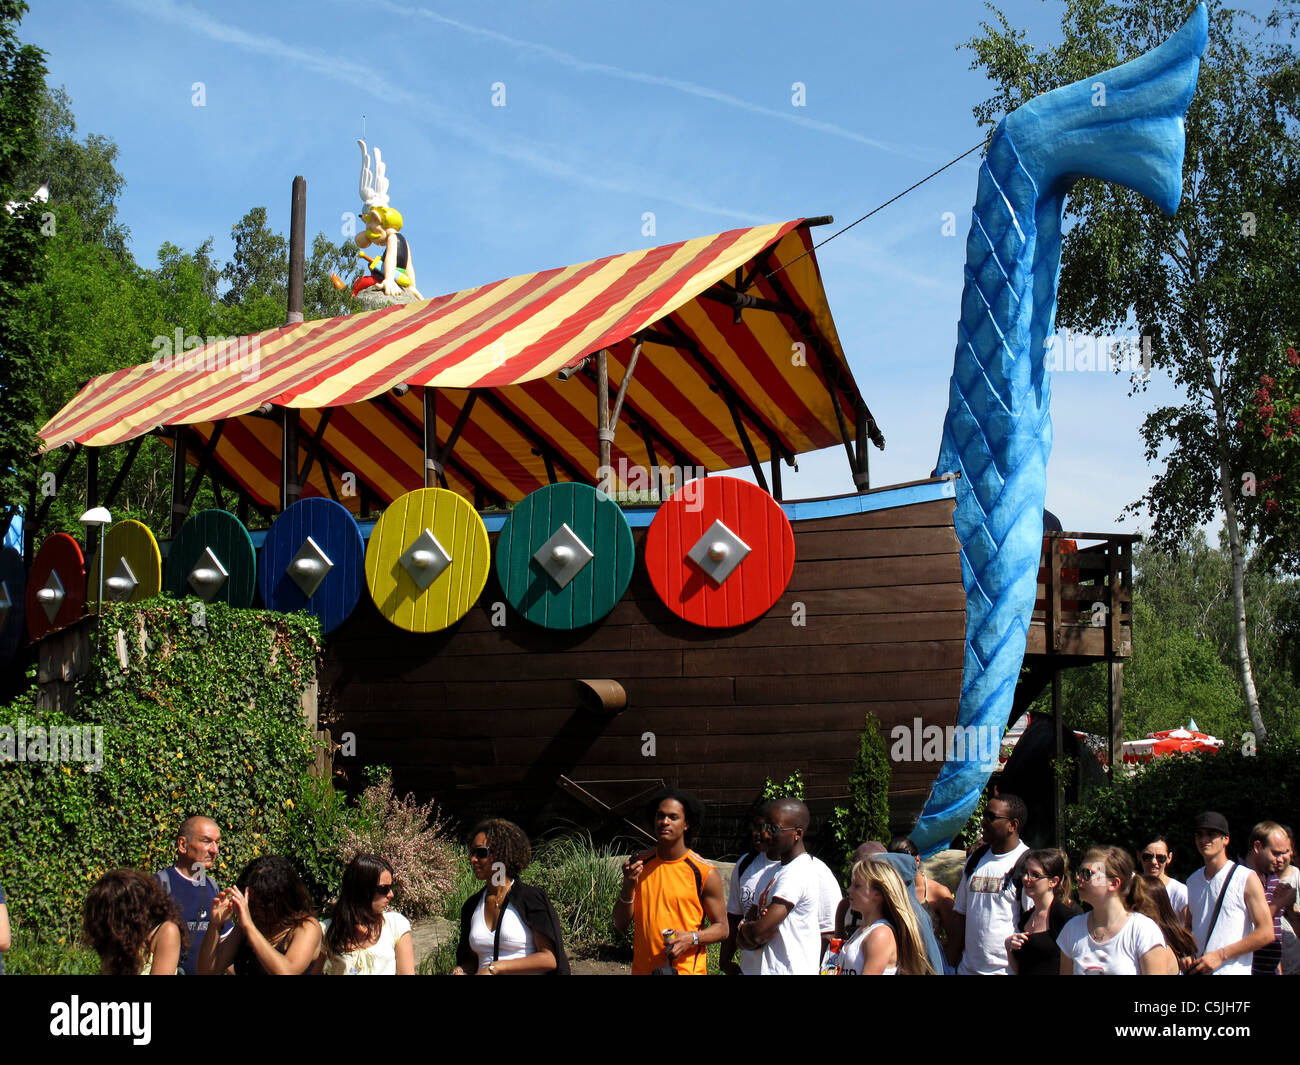 Parc Asterix,amusement park,Oise,near Paris,Ile-de-France,France,Epidemais Croisieres Stock Photo